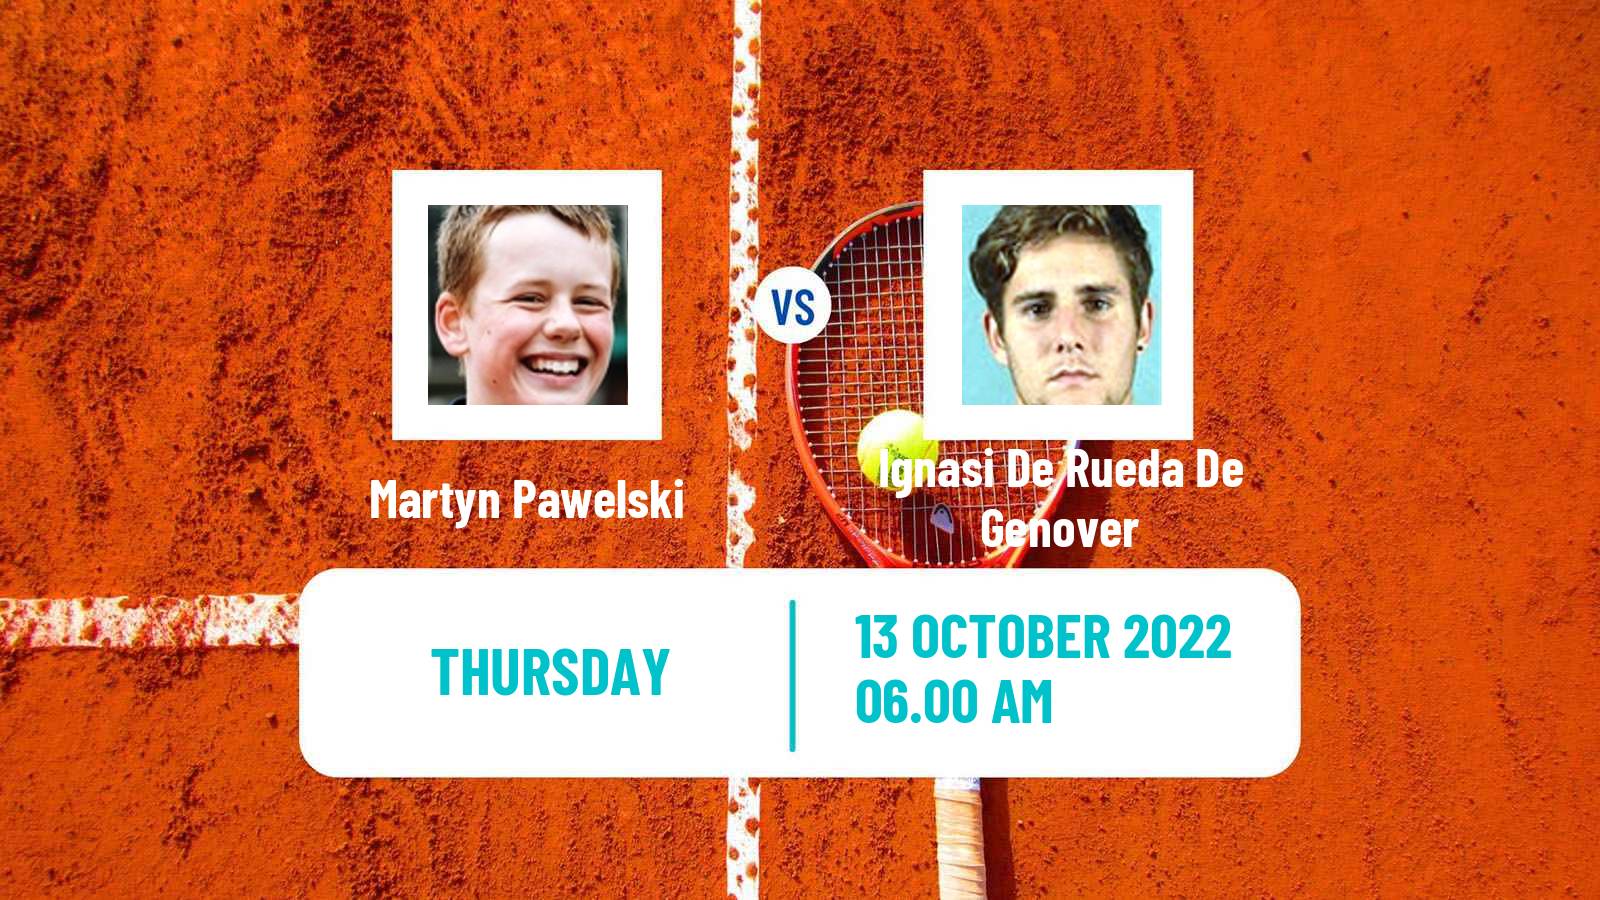 Tennis ITF Tournaments Martyn Pawelski - Ignasi De Rueda De Genover